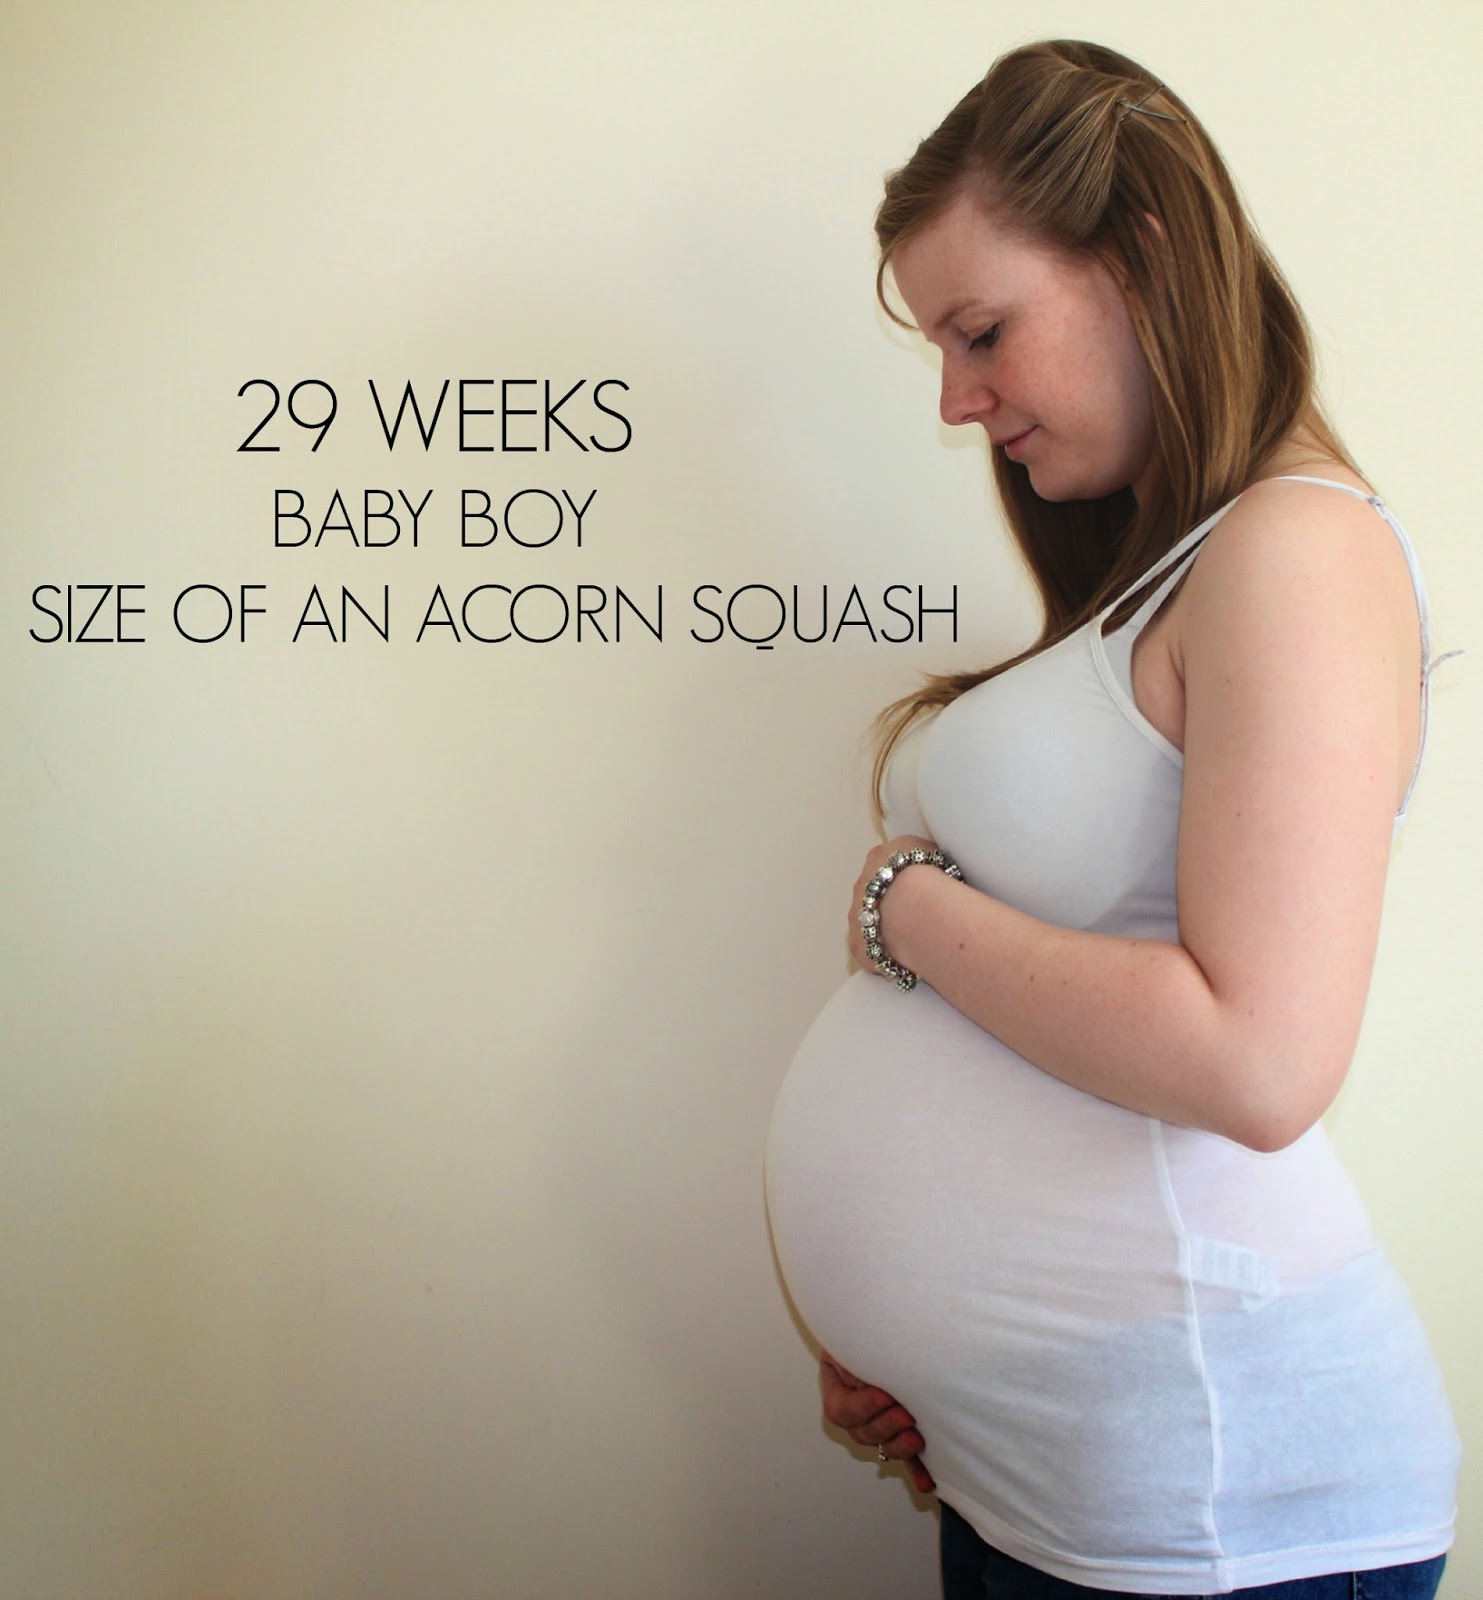 Pregnant Plus. Чего ждать на 40 неделе беременности. Как малыш расположен в животе на 29 неделе беременности. 40 недель беременности отзывы